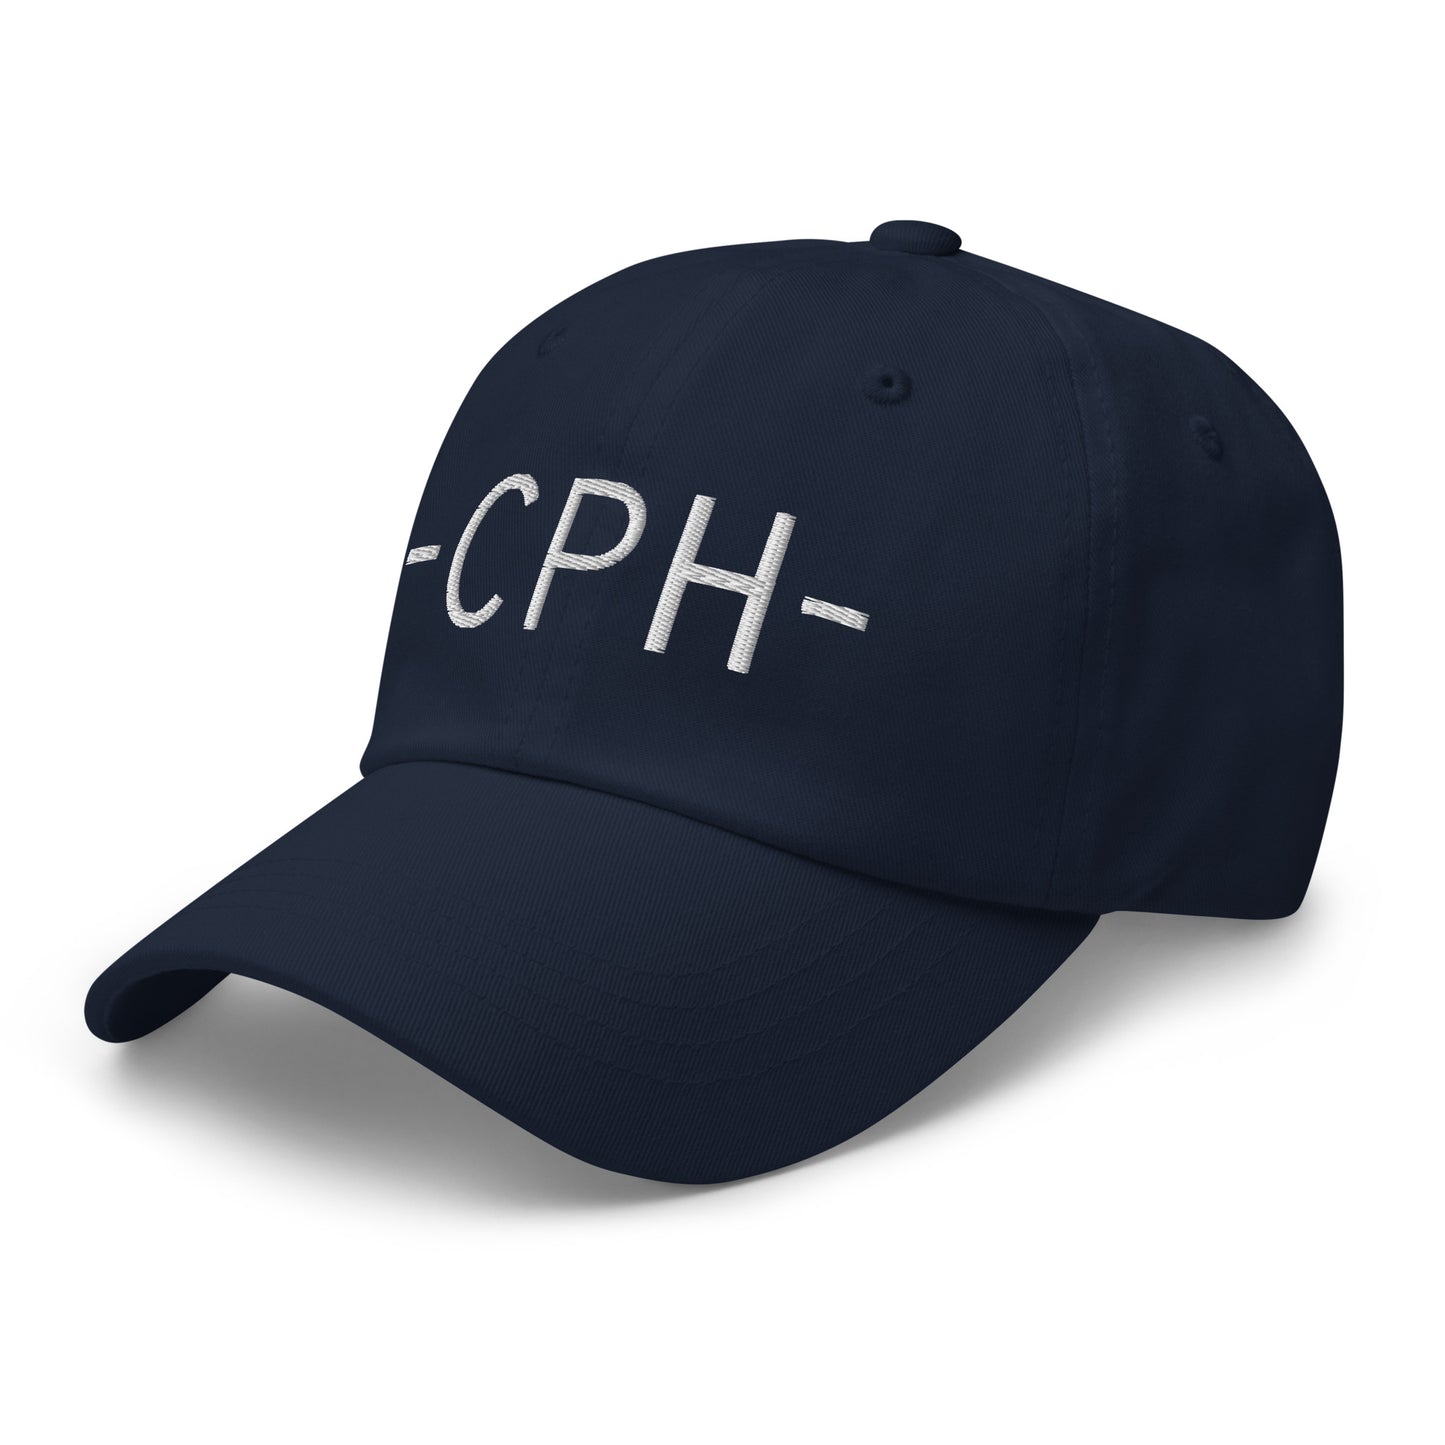 Souvenir Baseball Cap - White • CPH Copenhagen • YHM Designs - Image 15